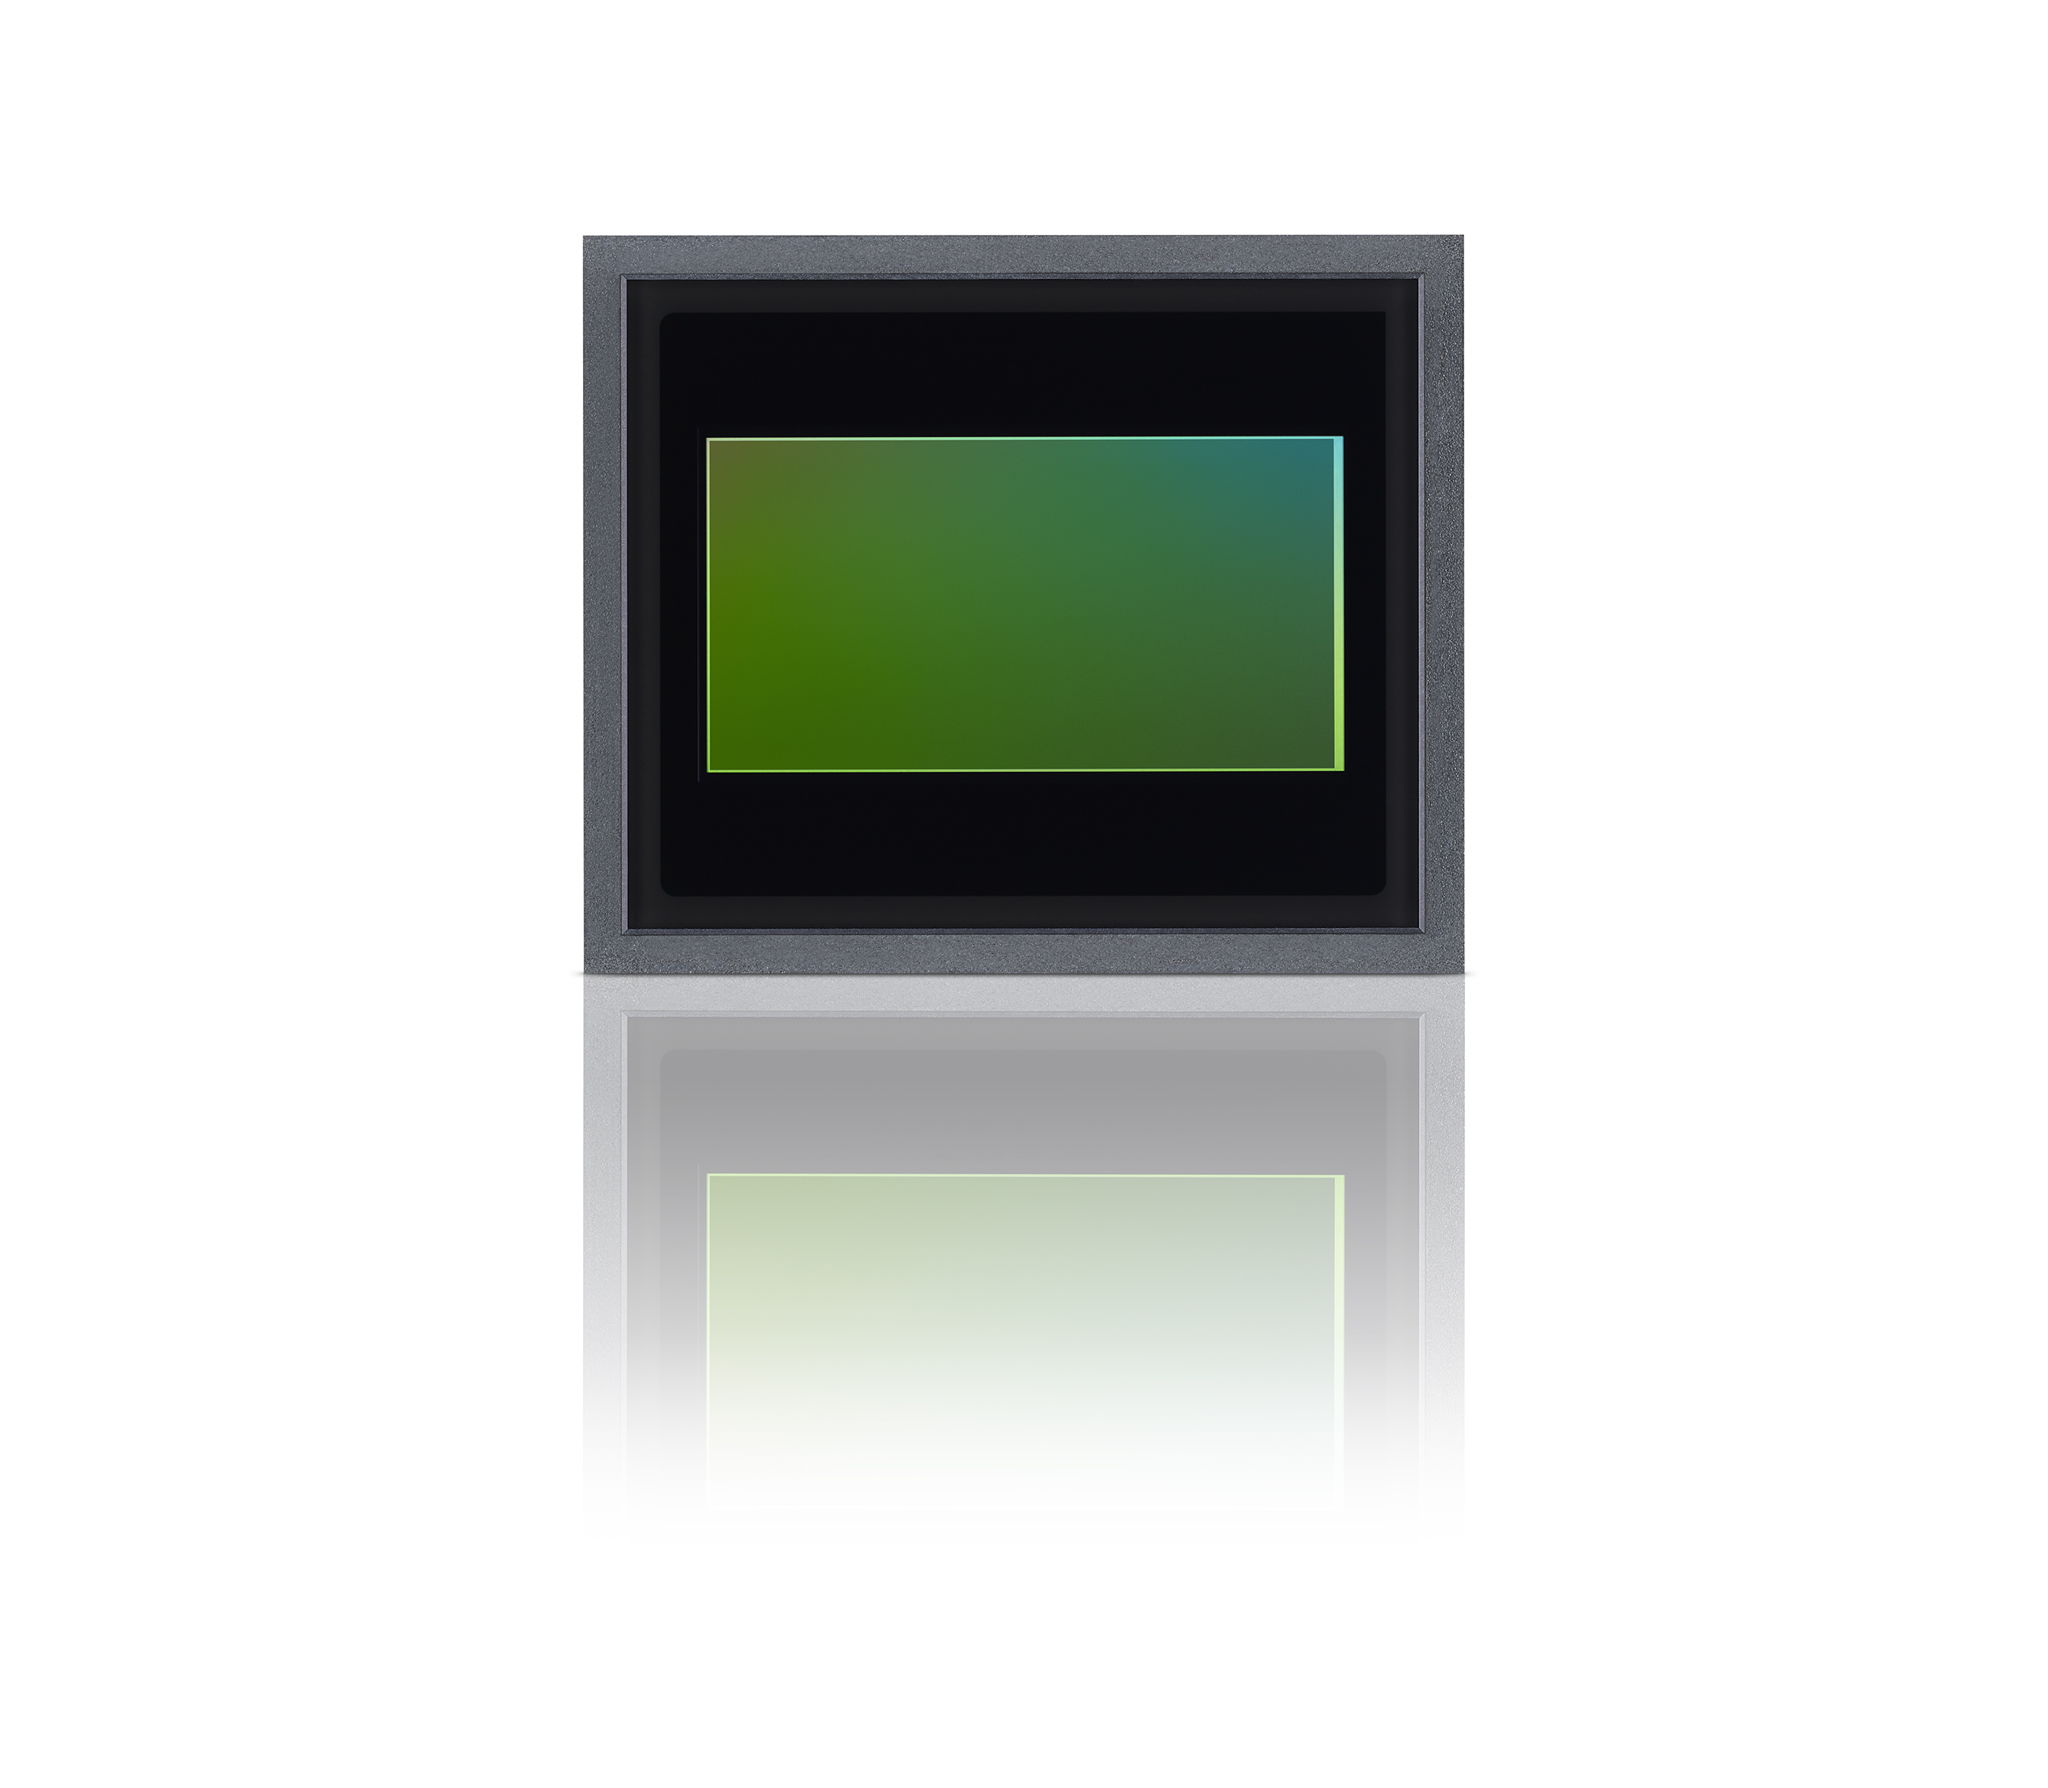 IMX735 CMOS image sensor for automotive cameras